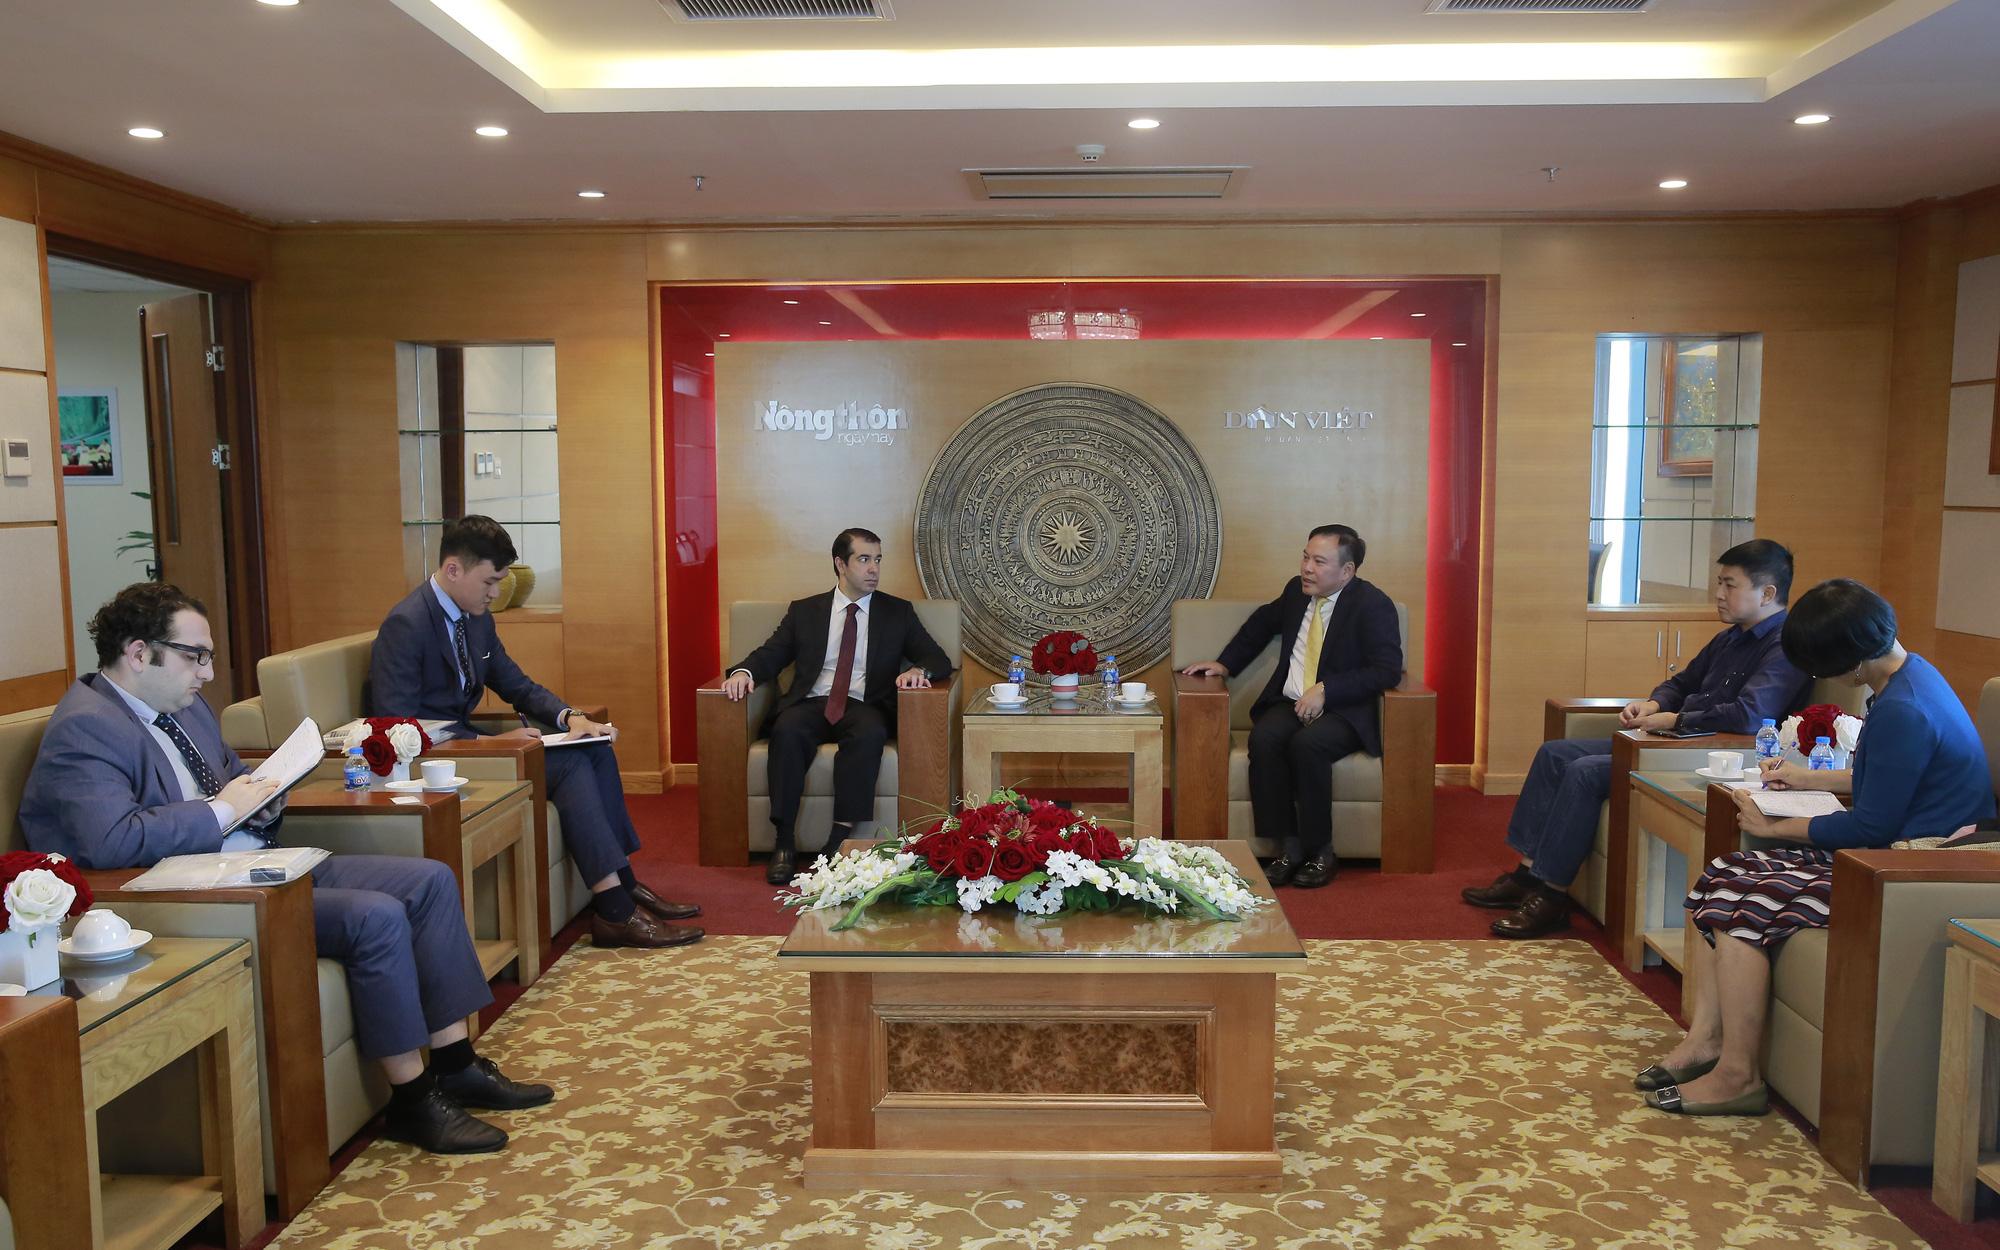 Đại sứ Cộng hòa Azerbaijan tại Việt Nam thăm và làm việc với Báo Nông thôn Ngày nay/Báo Điện tử Dân Việt